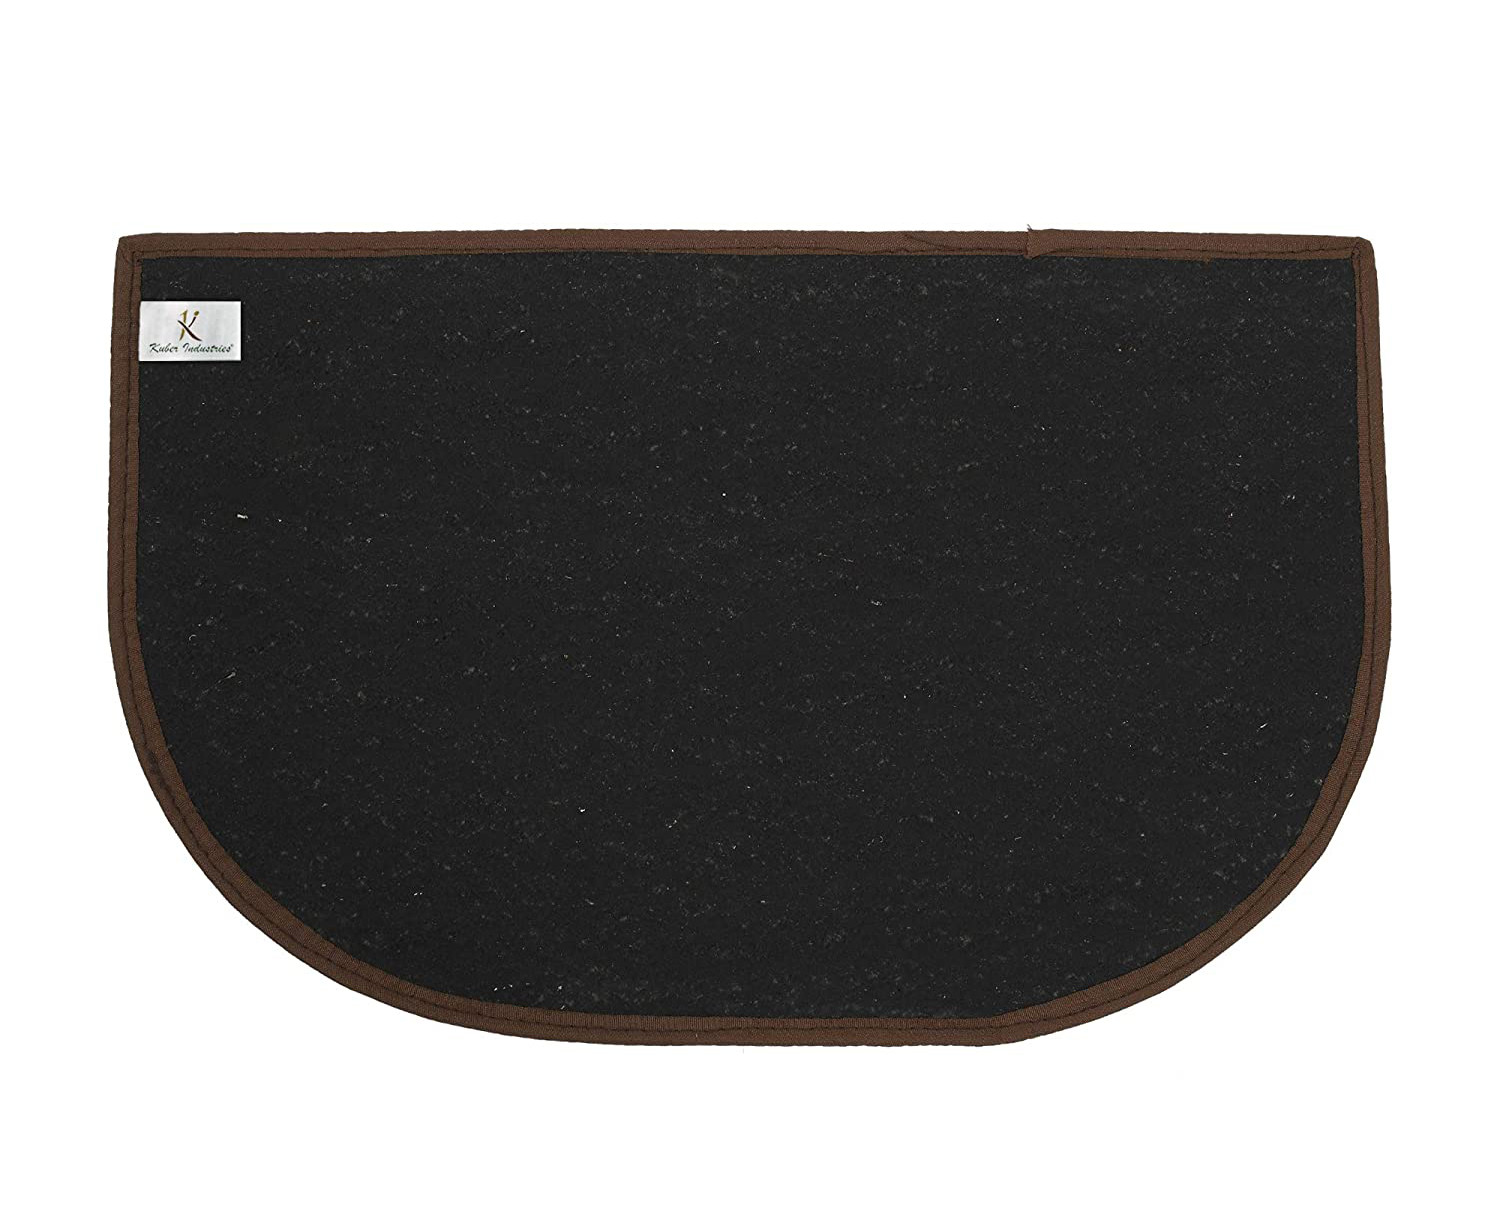 Kuber Industries D Shape Strips Design Microfiber Non-Slip Door Mat For Outdoor, Indoor 21 in. x 13 in. (Brown)